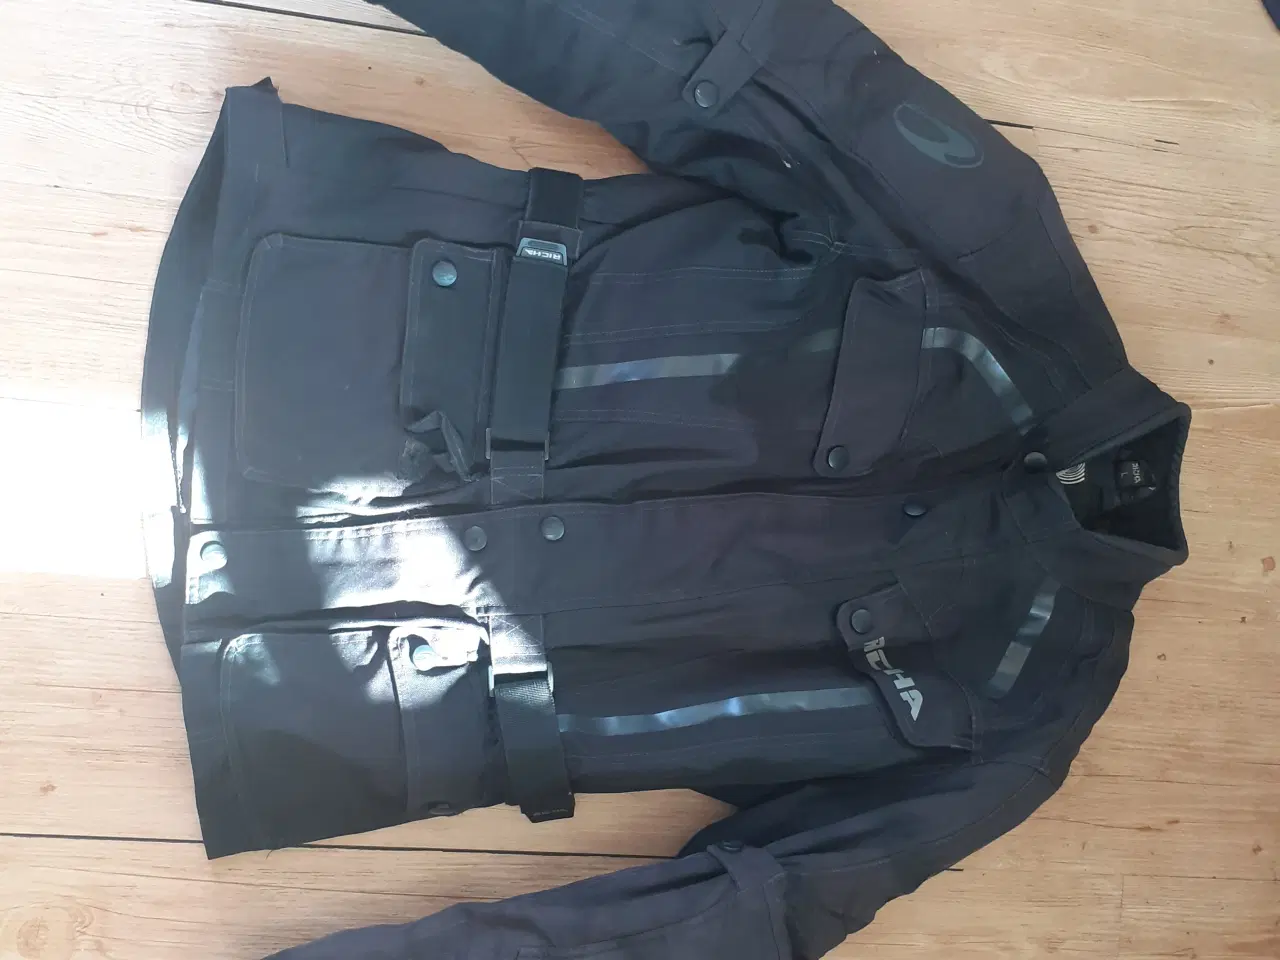 Billede 4 - MC bukser, jakker, støvler mm udstyr til 2 persone